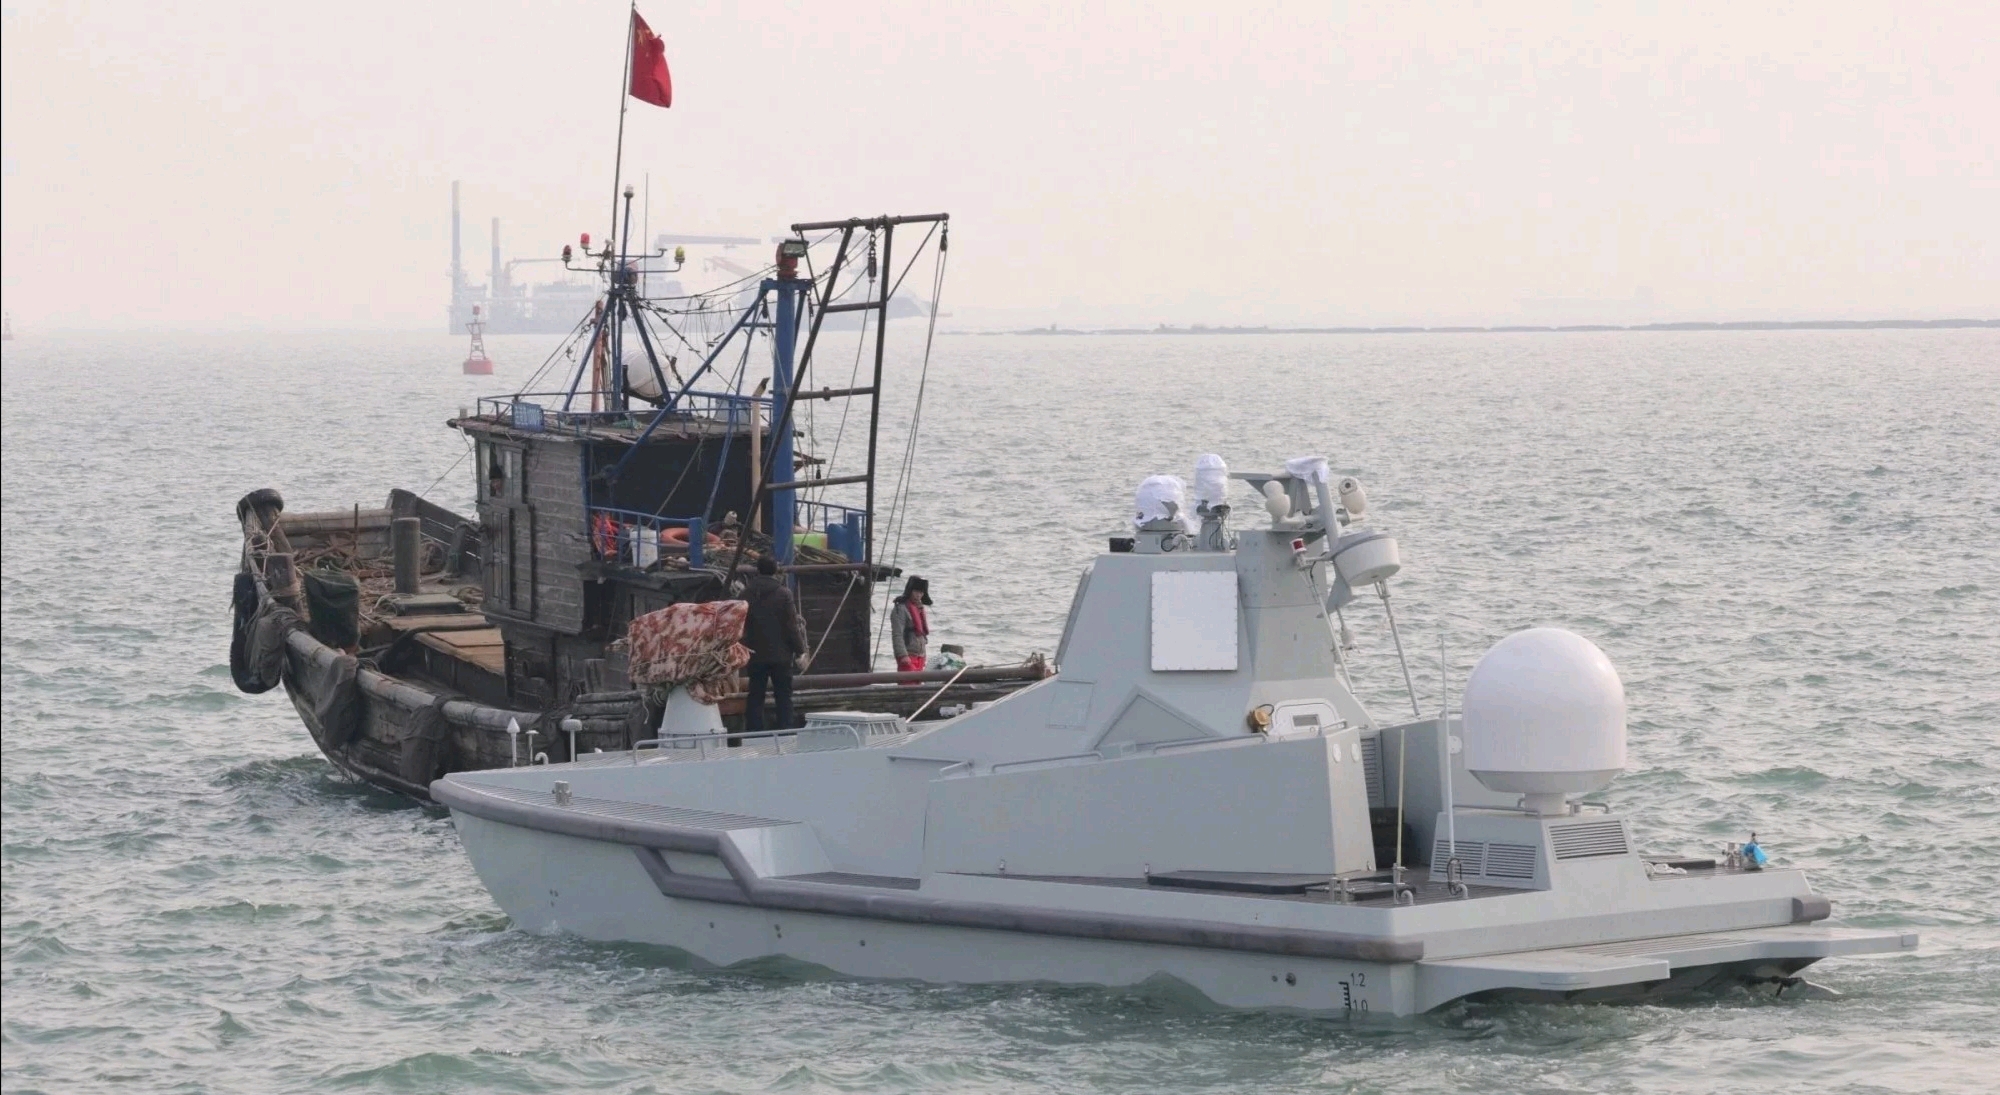 中国测试一款全球首创无人战斗艇,可执行多种特殊任务